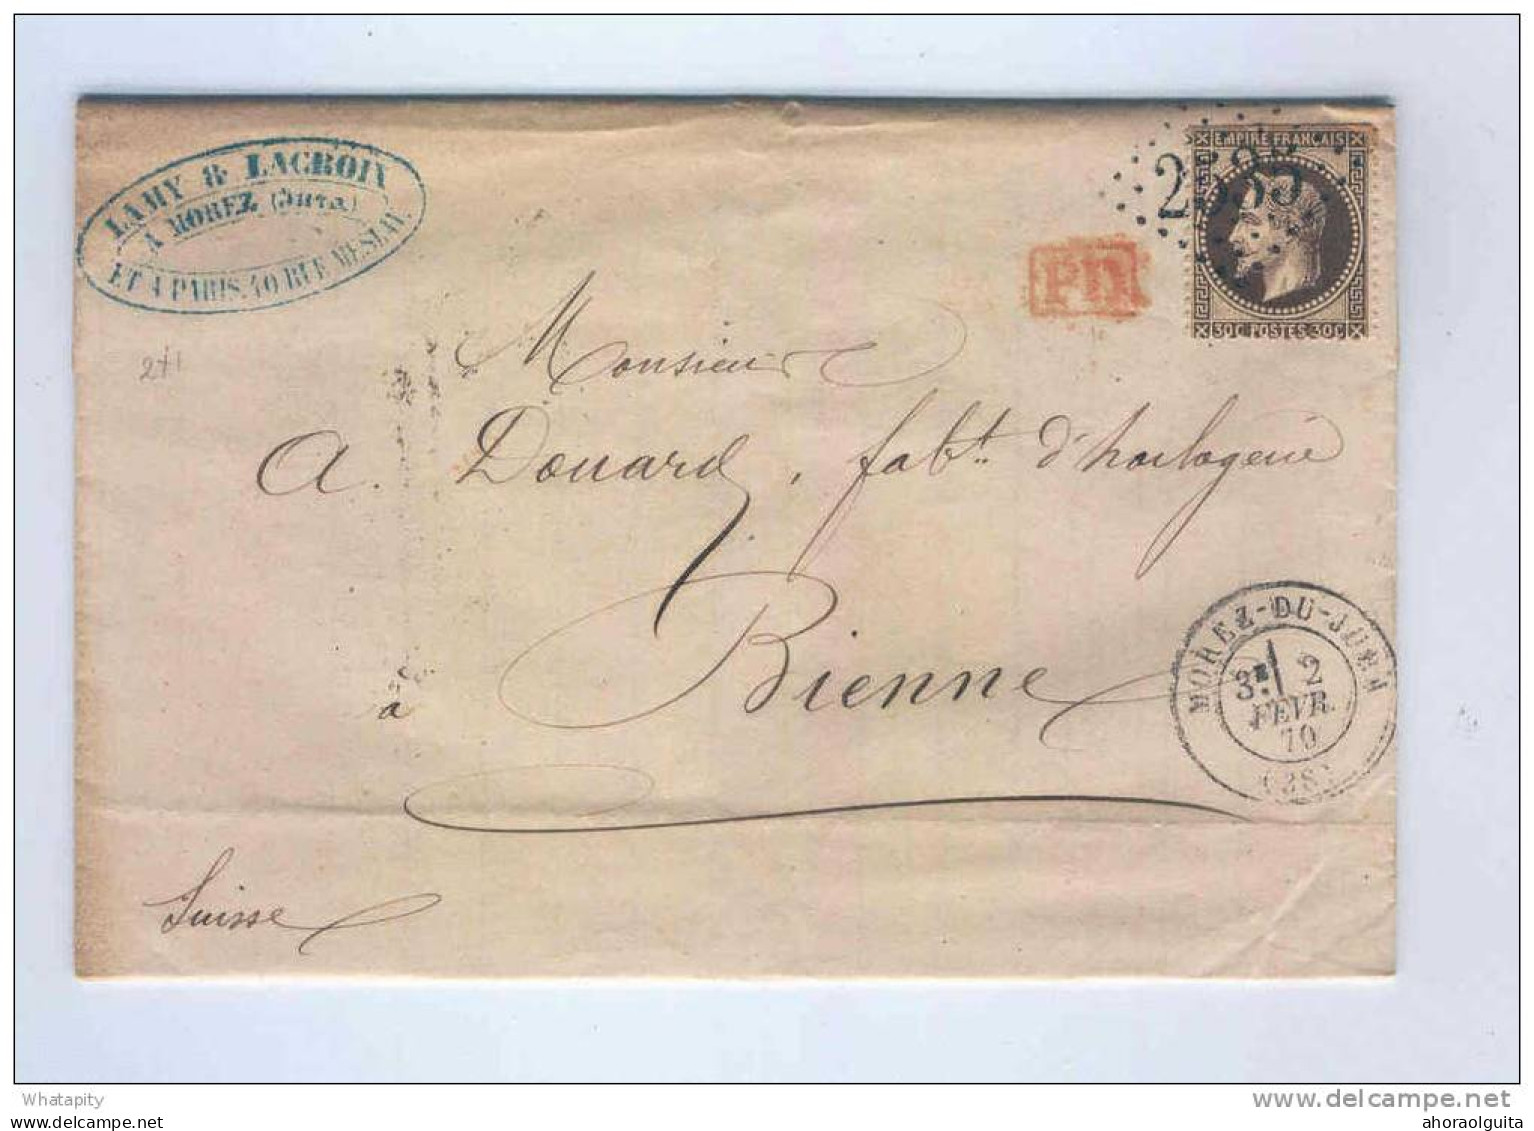 HORLOGERIE SUISSE / FRANCE - Archive Douard à BIENNE - MOREZ DU JURA 1870 -  TB  Entete Lamy Et Lacroix --  LL016 - Uhrmacherei